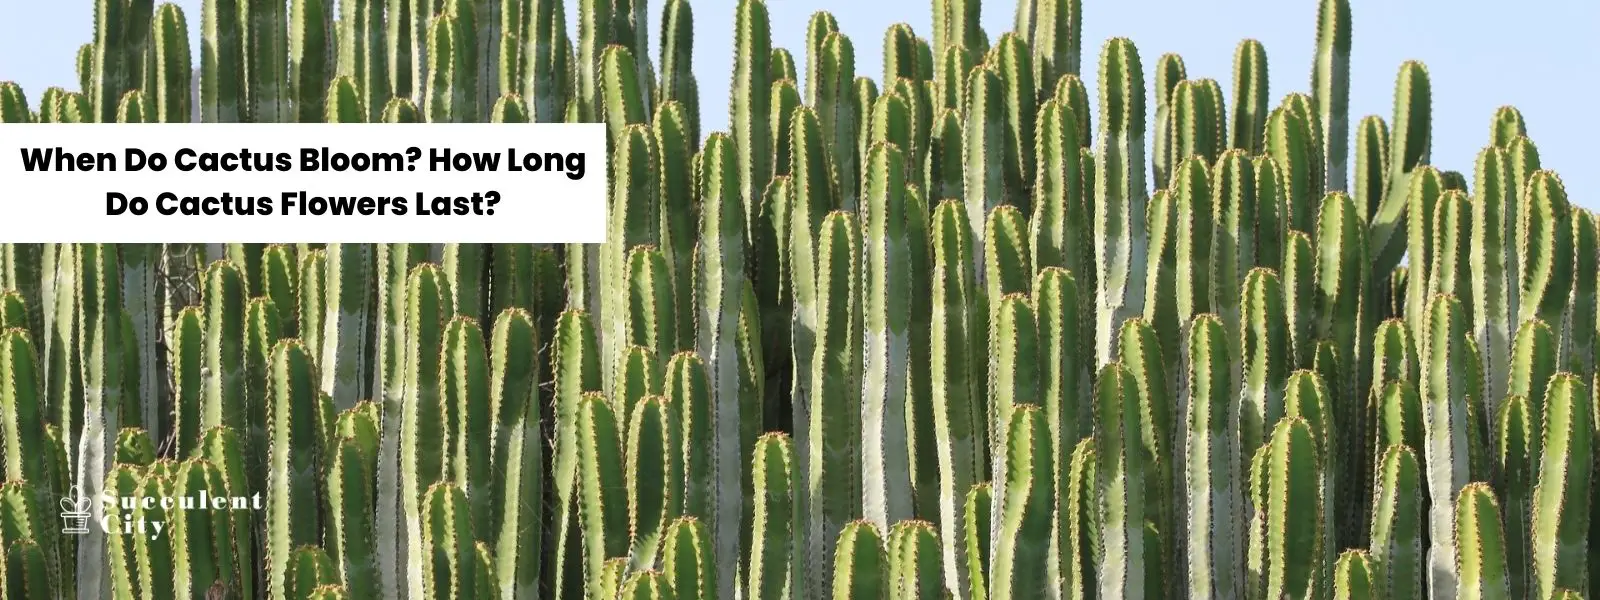 ¿Cuándo florecen los cactus? ¿Cuánto duran las flores de los cactus?